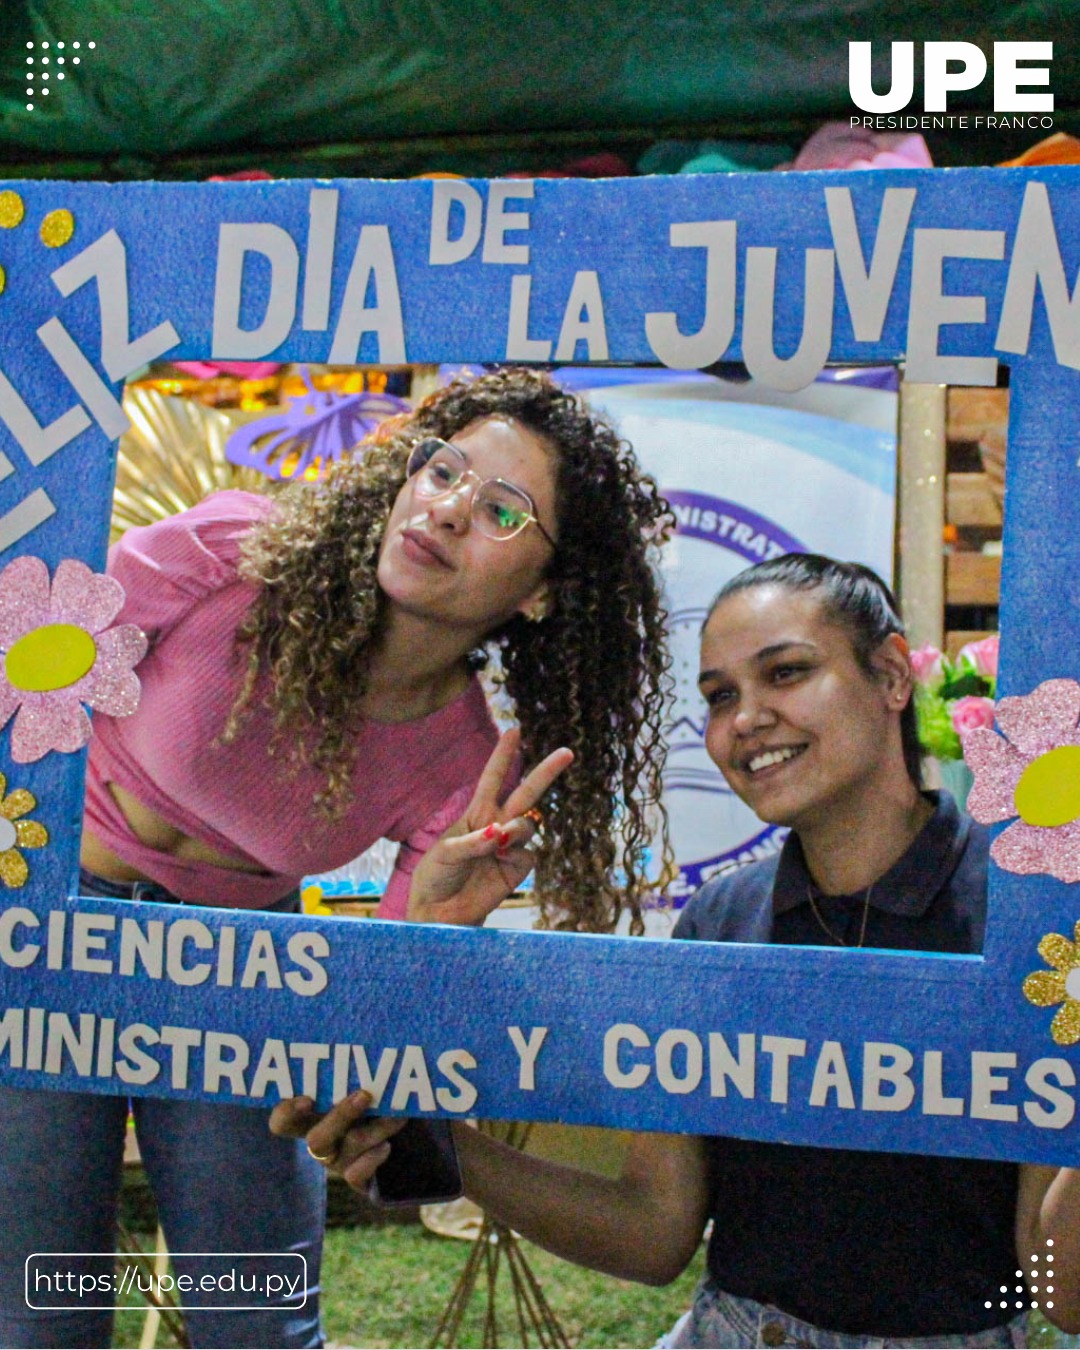 Gran festejo en la UPE: Día de la Juventud